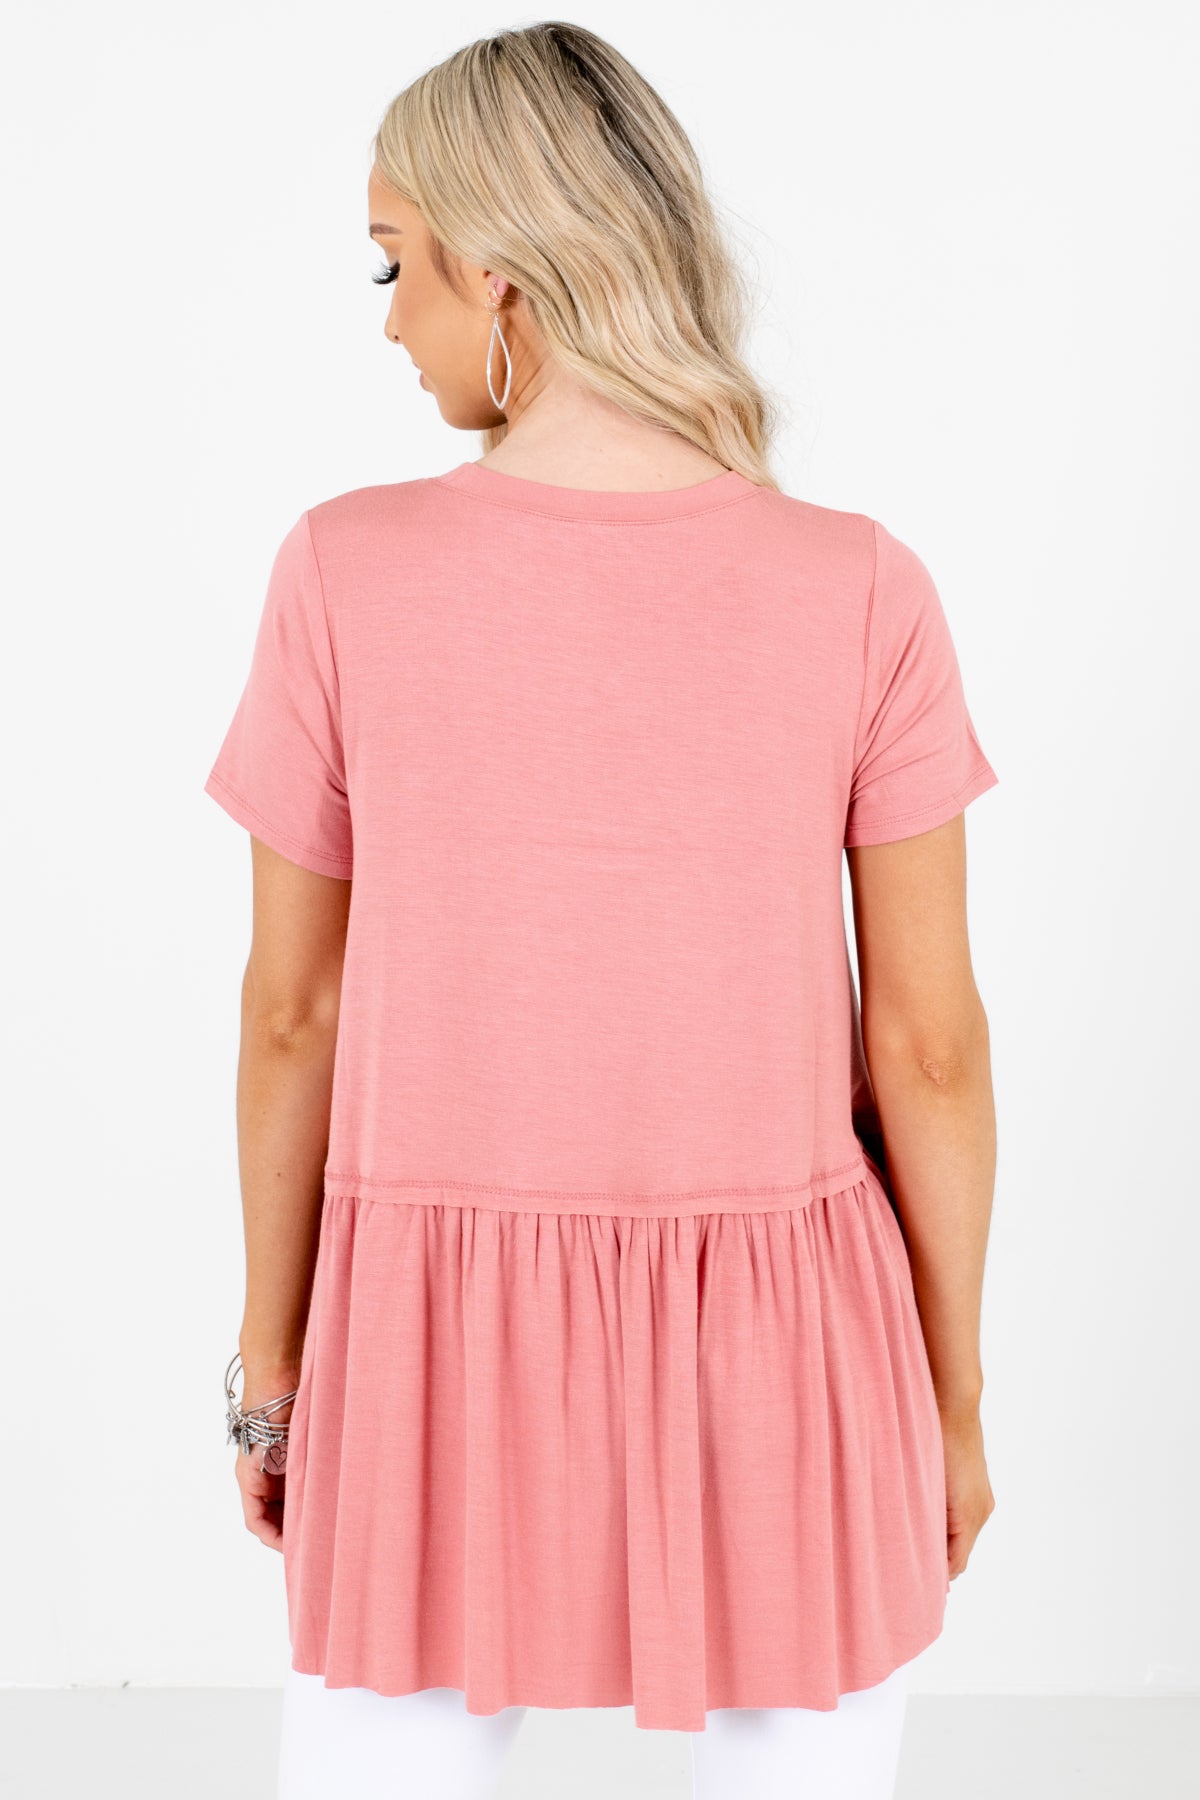 Women's Pink Round Neckline Boutique Tops